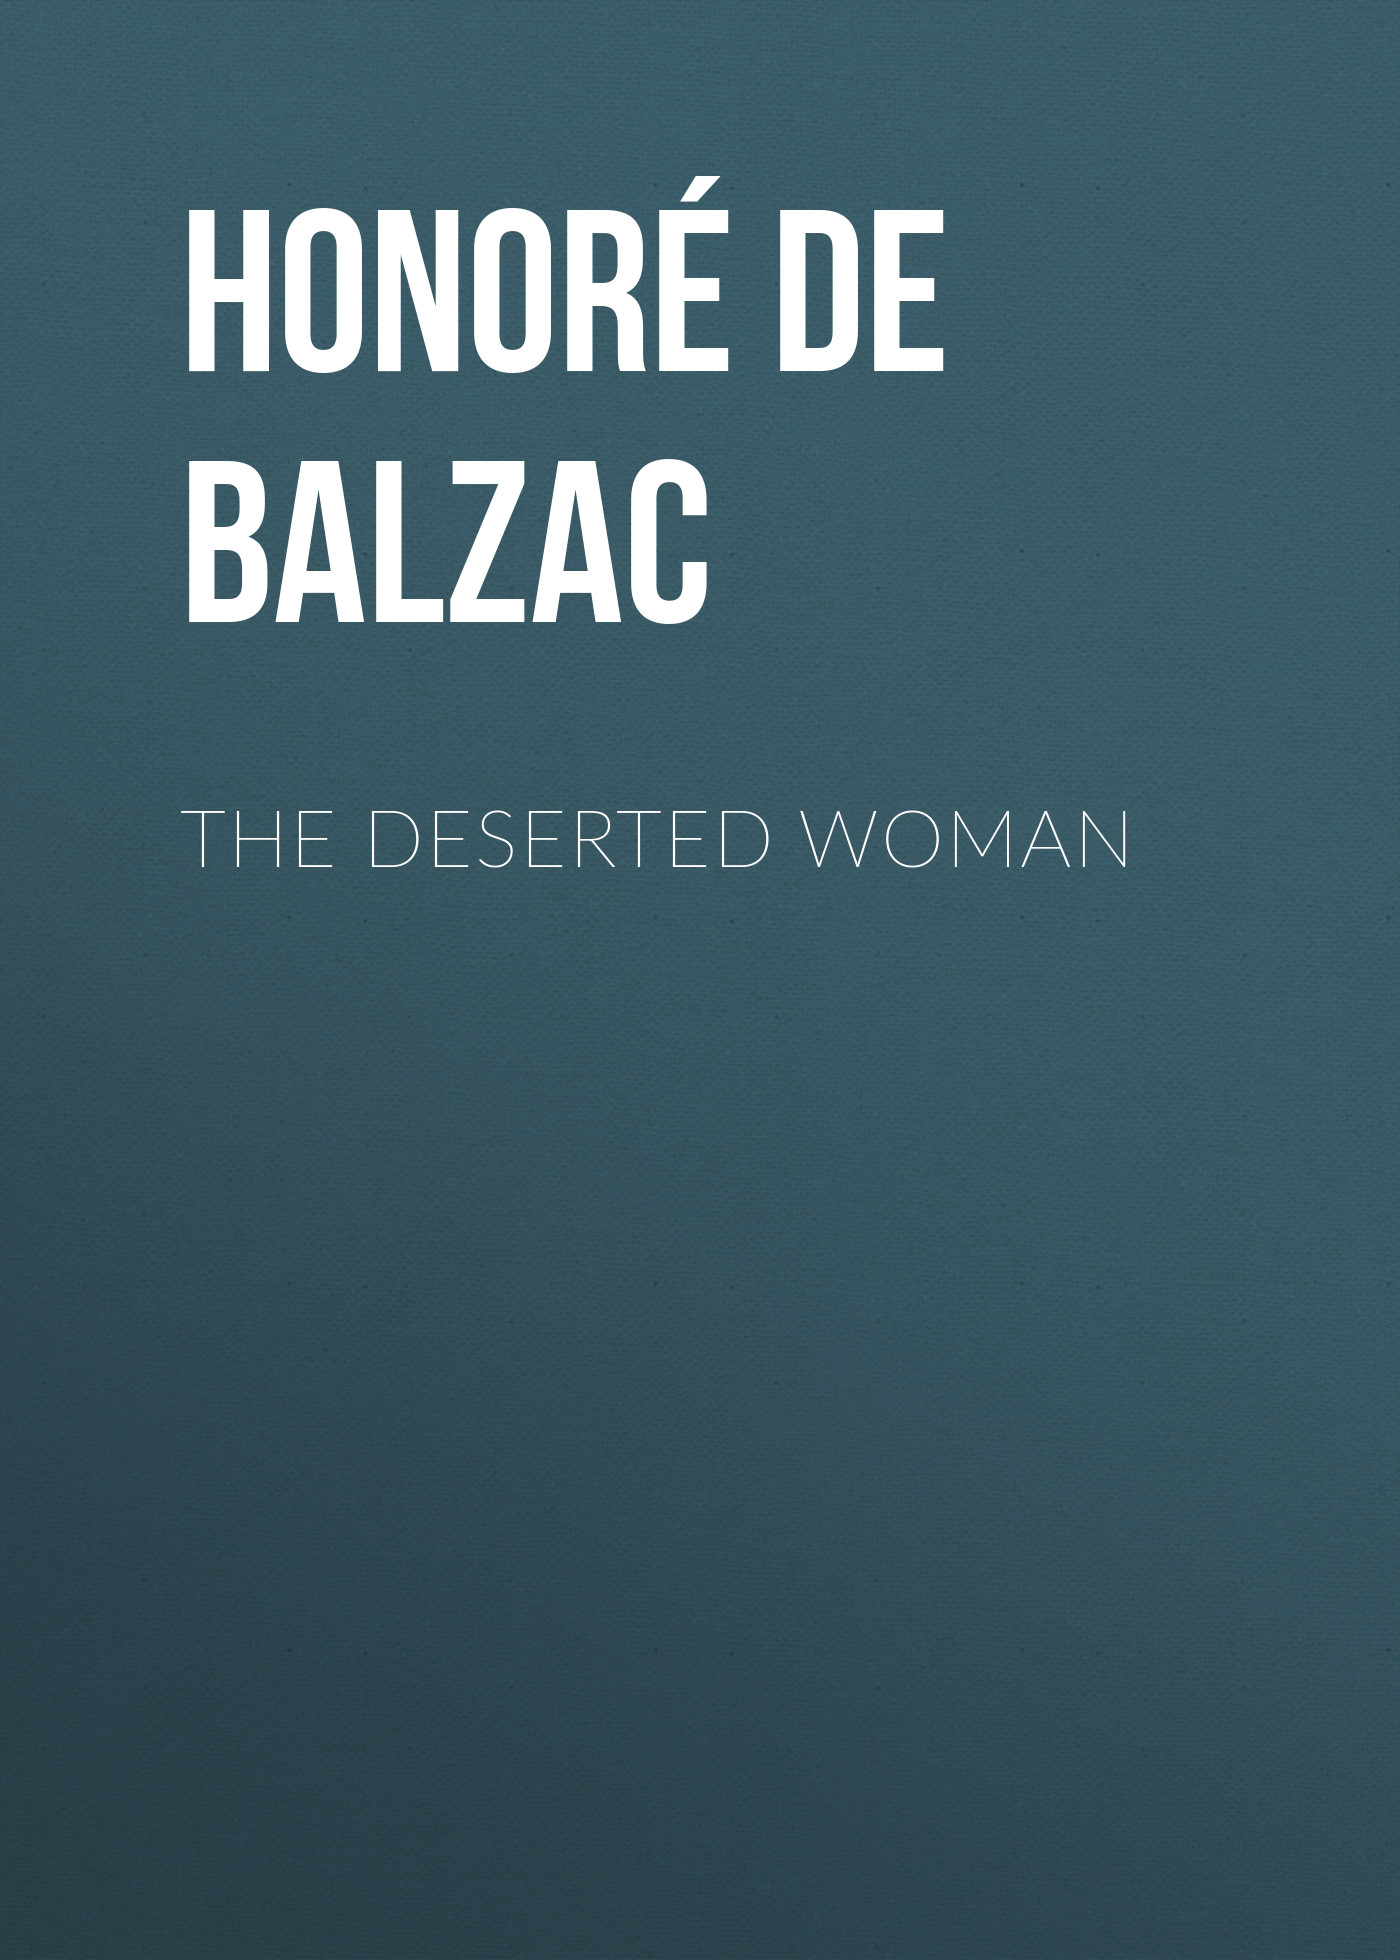 Книга The Deserted Woman из серии , созданная Honoré Balzac, может относится к жанру Литература 19 века, Зарубежная старинная литература, Зарубежная классика. Стоимость электронной книги The Deserted Woman с идентификатором 25020371 составляет 0 руб.